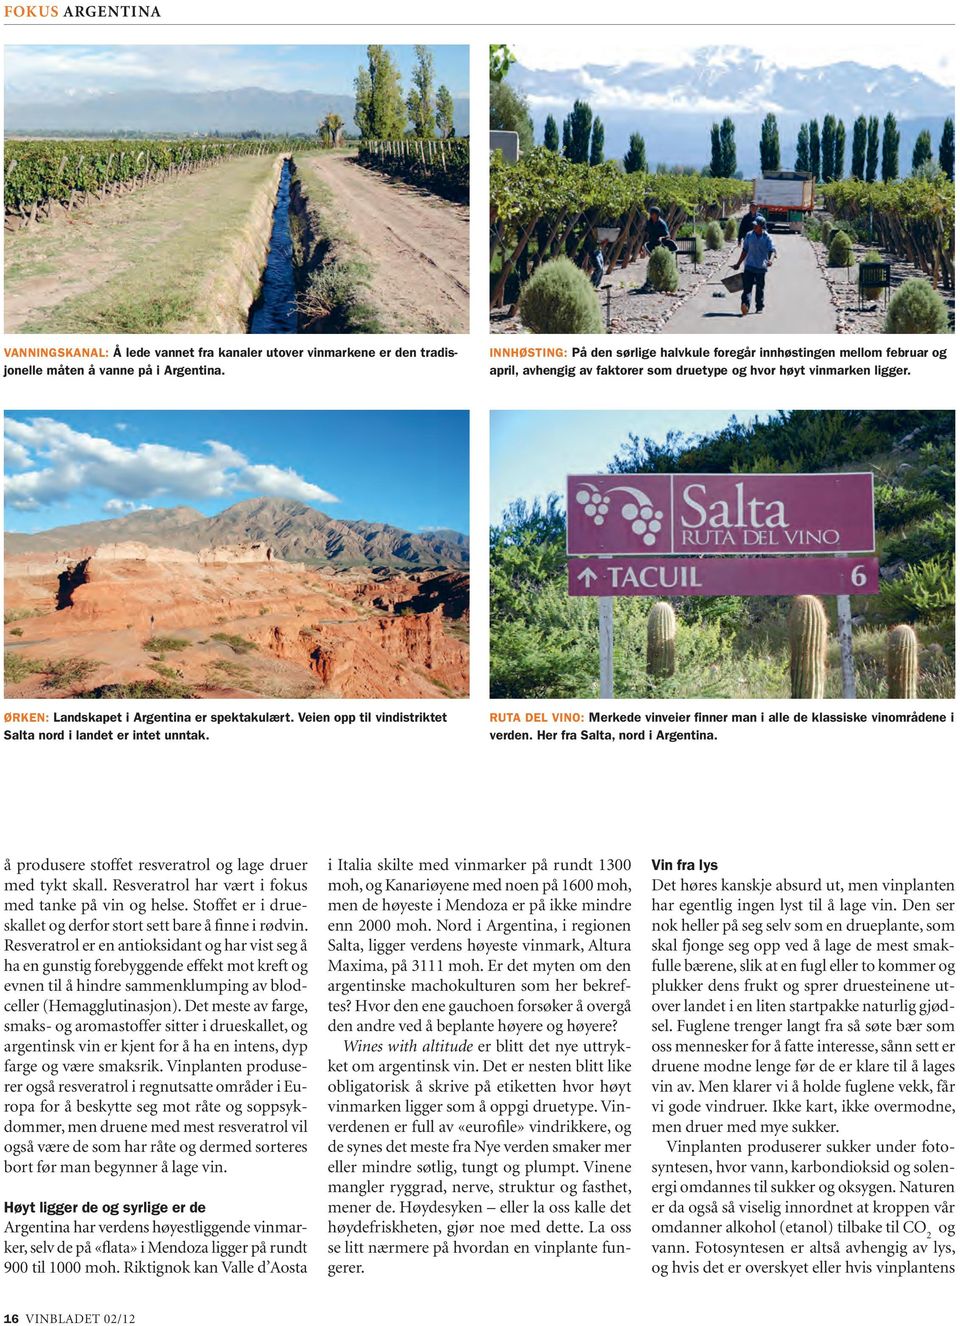 Veien opp til vindistriktet Salta nord i landet er intet unntak. Ruta del Vino: Merkede vinveier finner man i alle de klassiske vinområdene i verden. Her fra Salta, nord i Argentina.